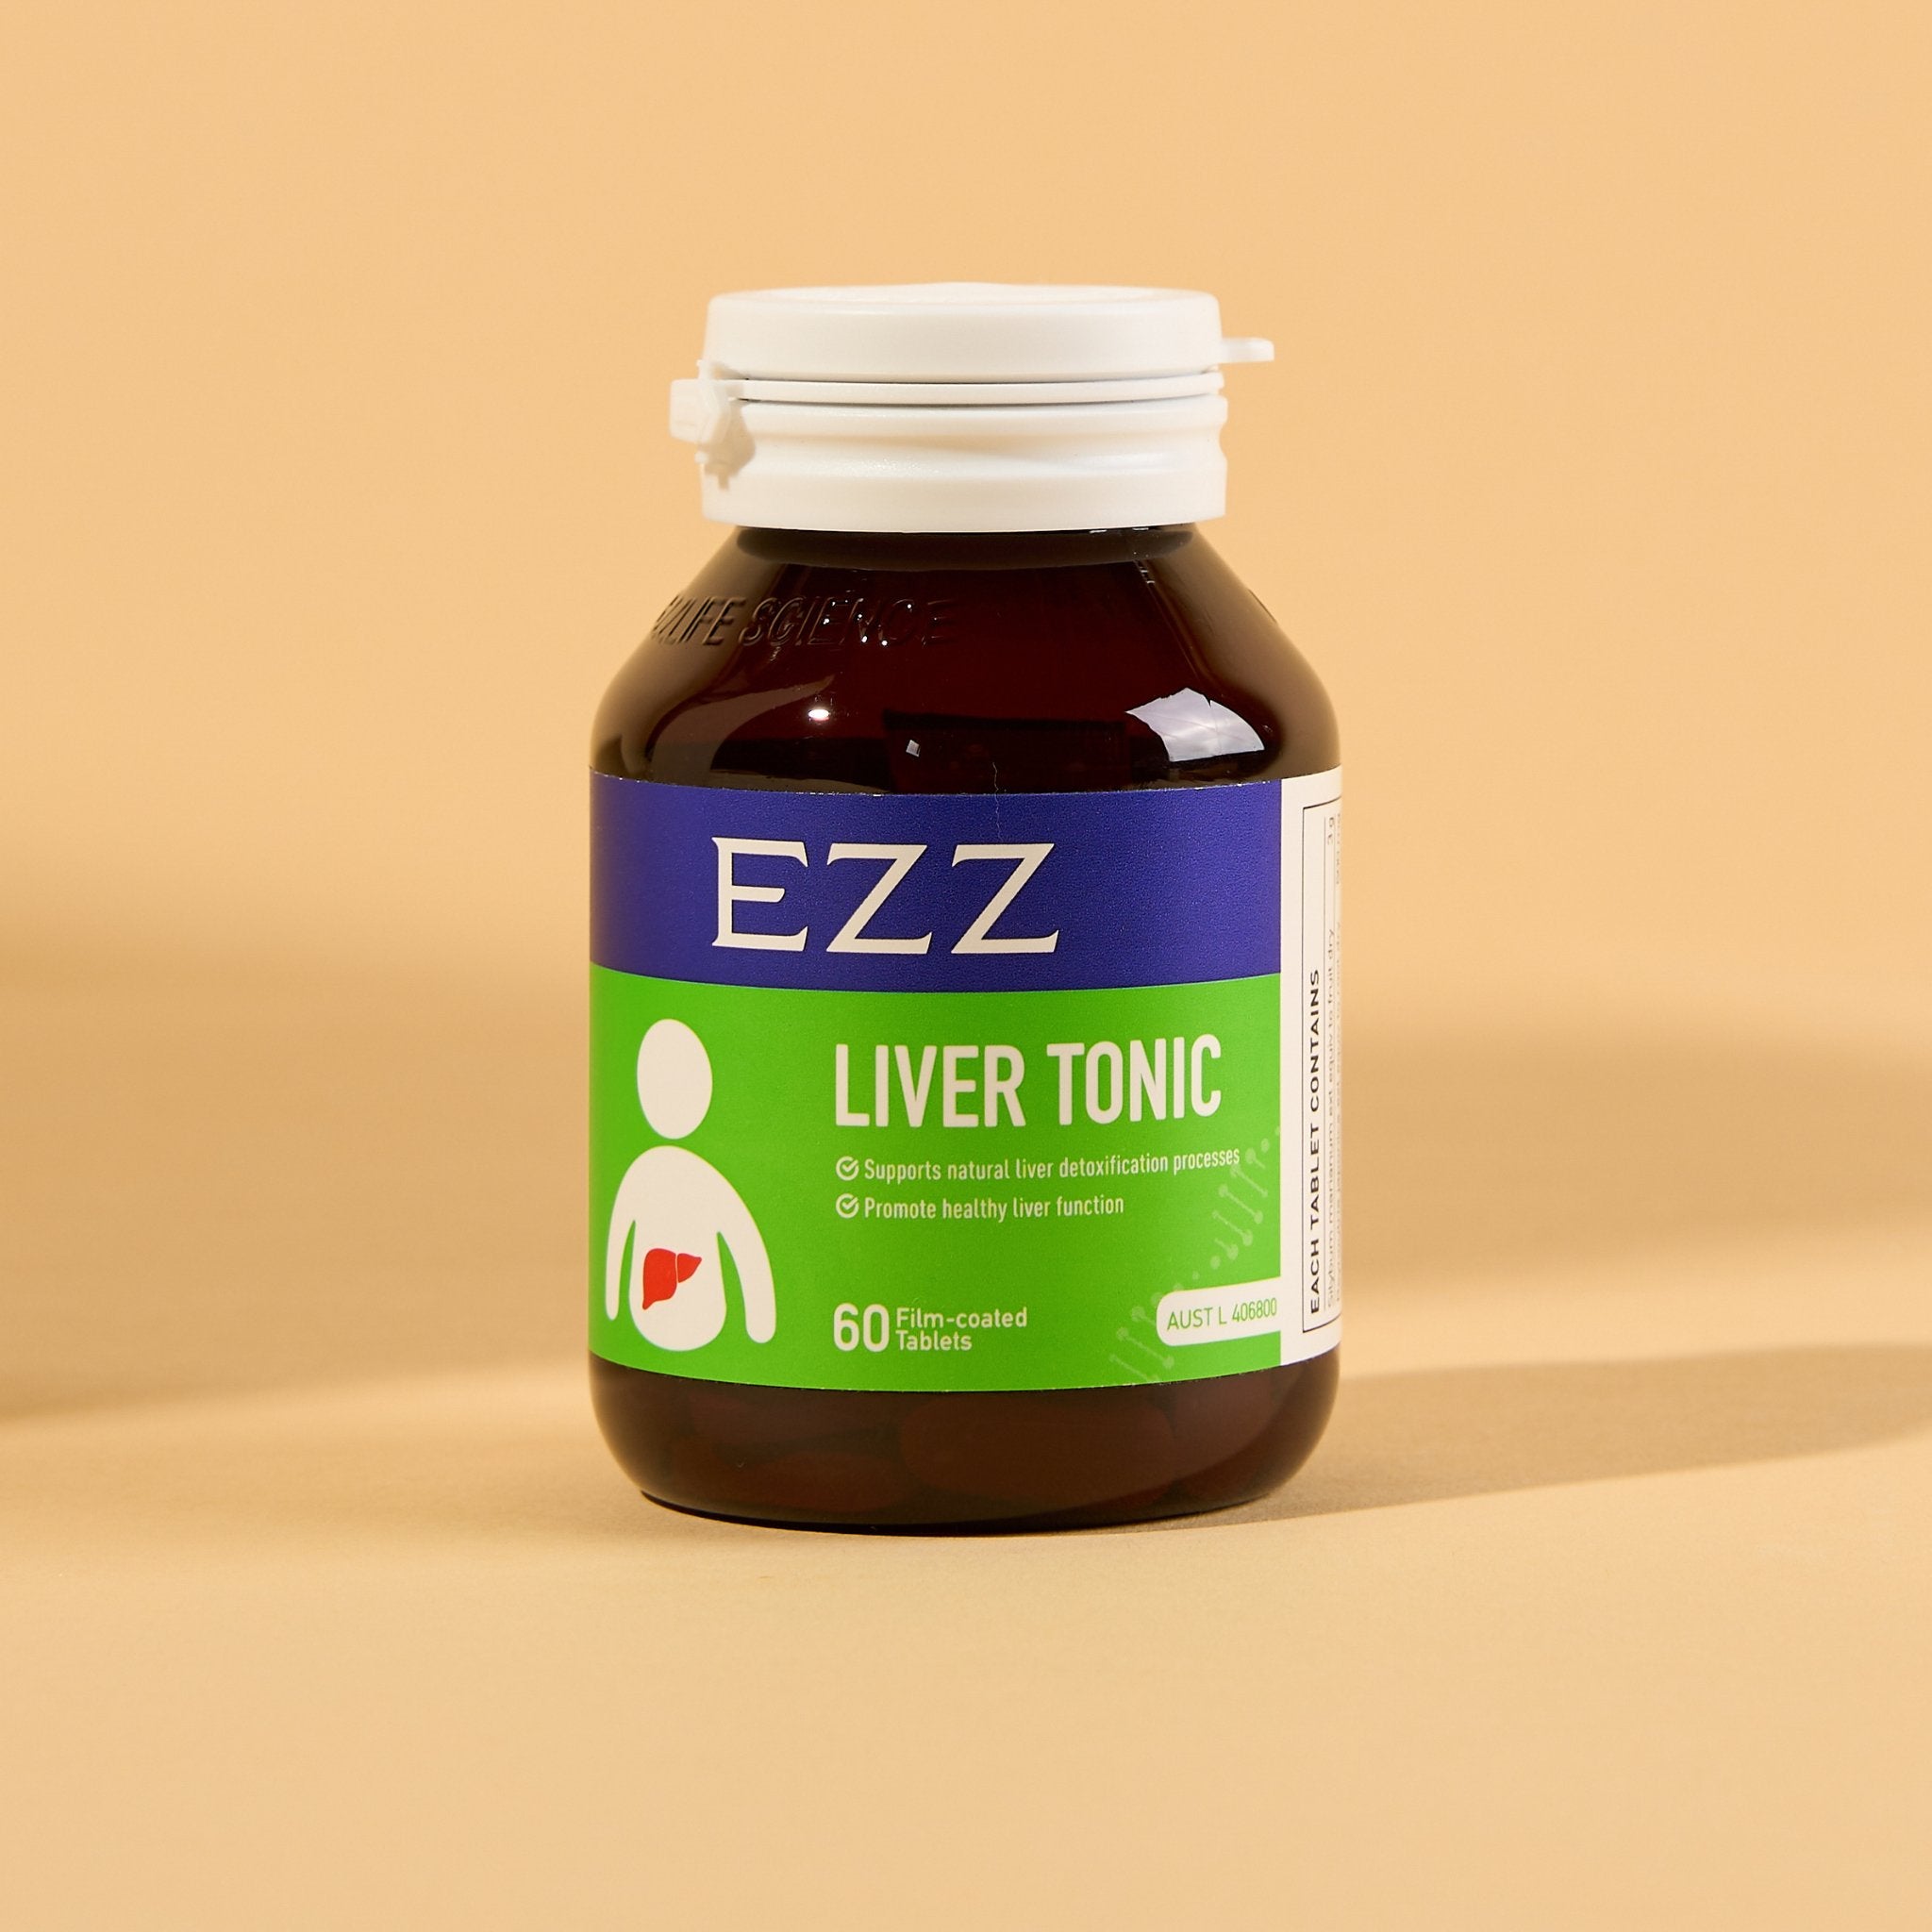 EZZ Liver Tonic - EZZ OFFICIAL